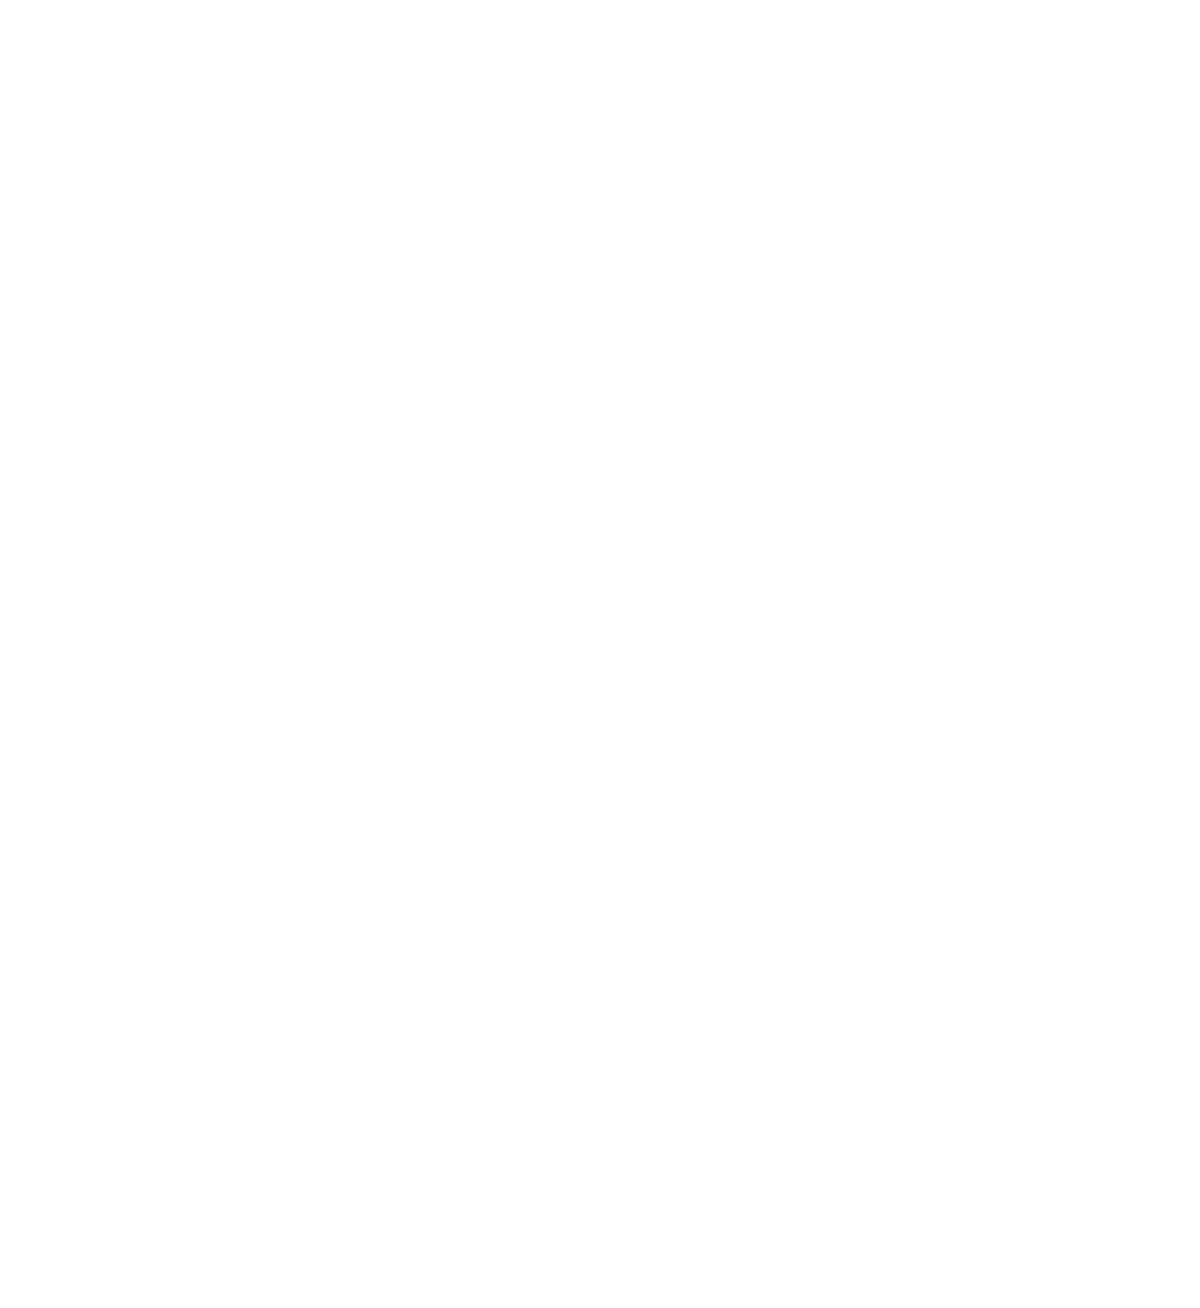 Shadetree